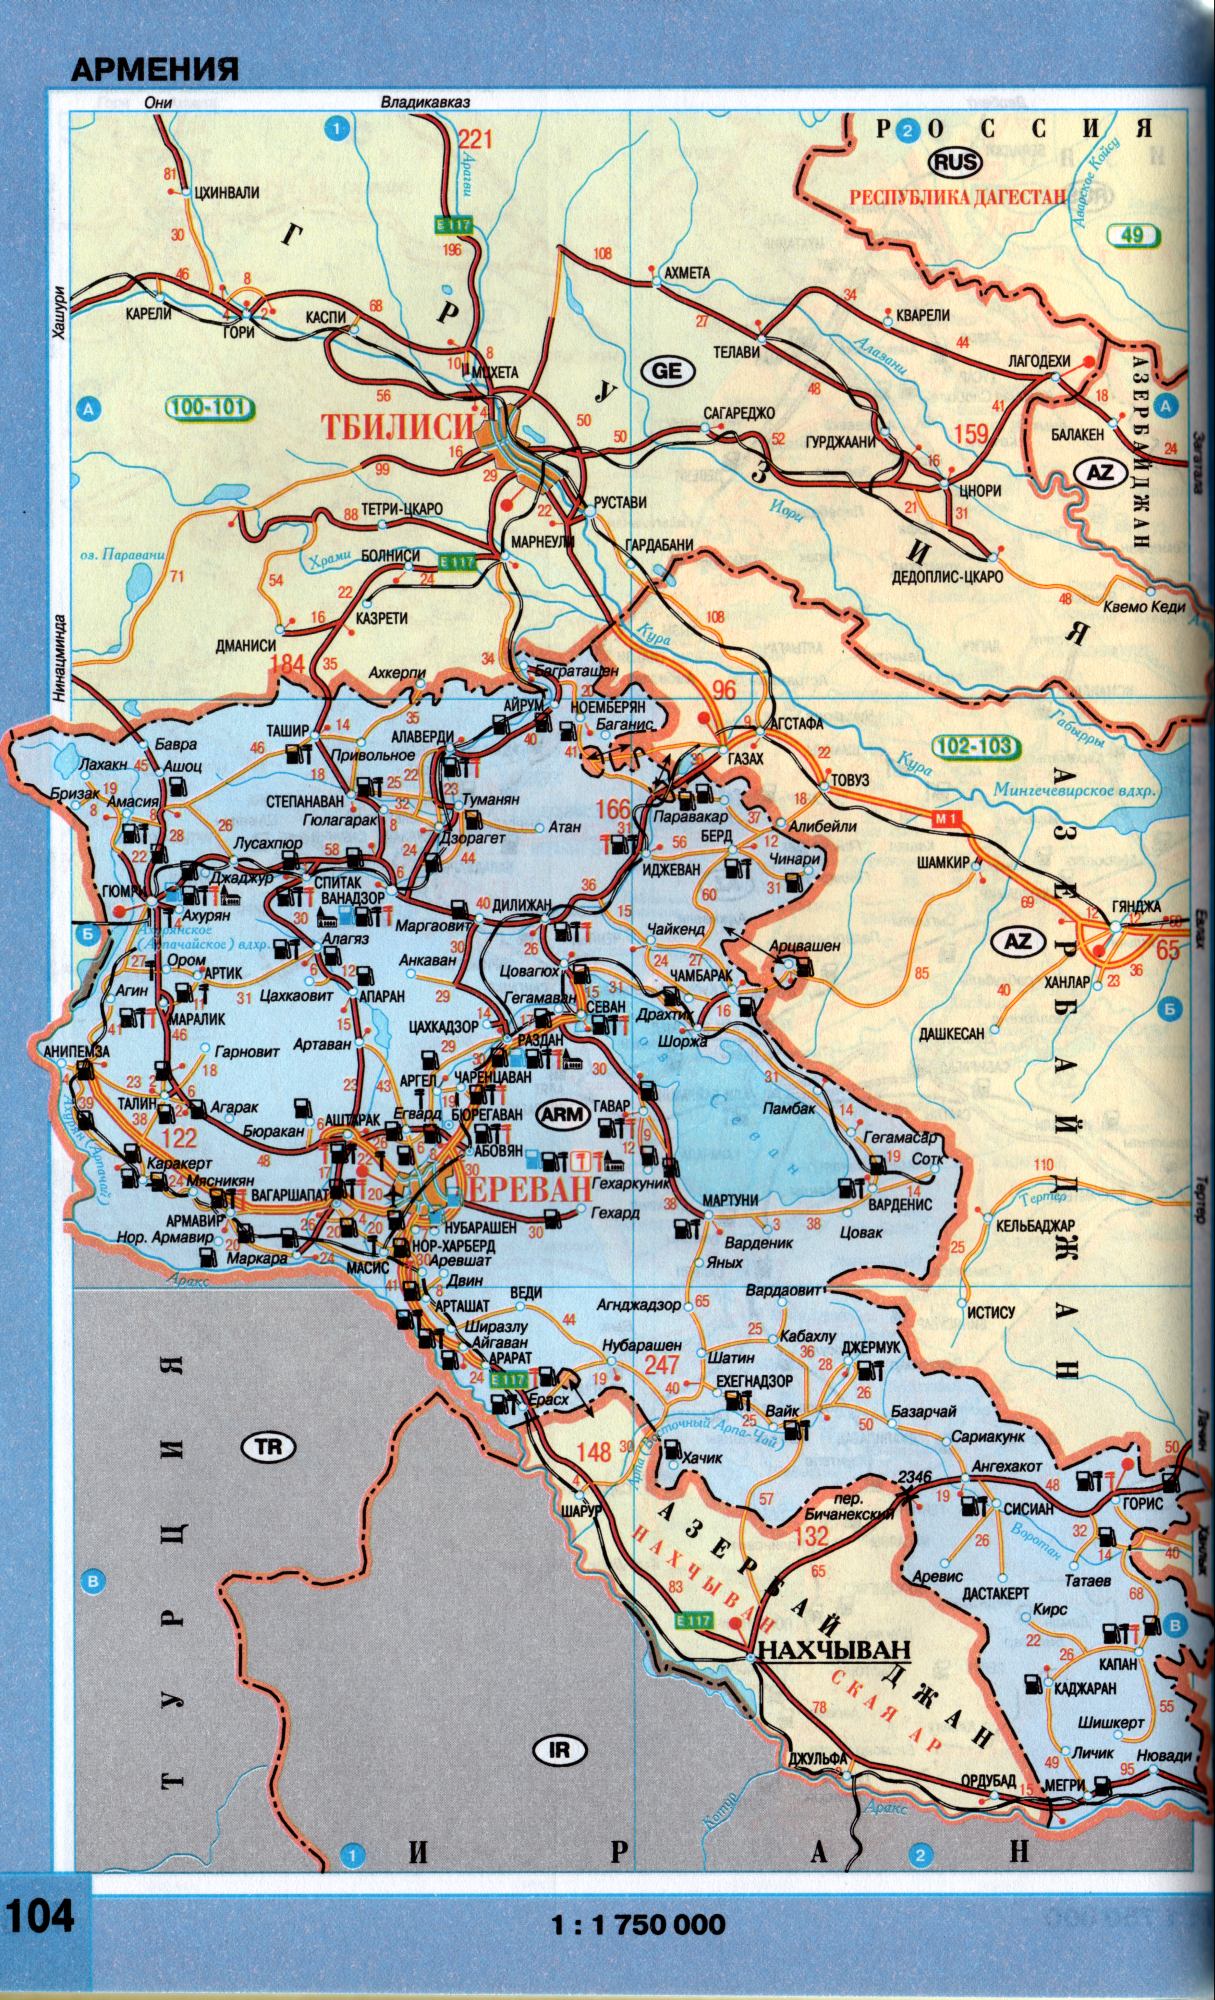 Карта Армении. Автомобильные дороги Армении с расстояниями между городами. Скачать карту Армении, A0 - 